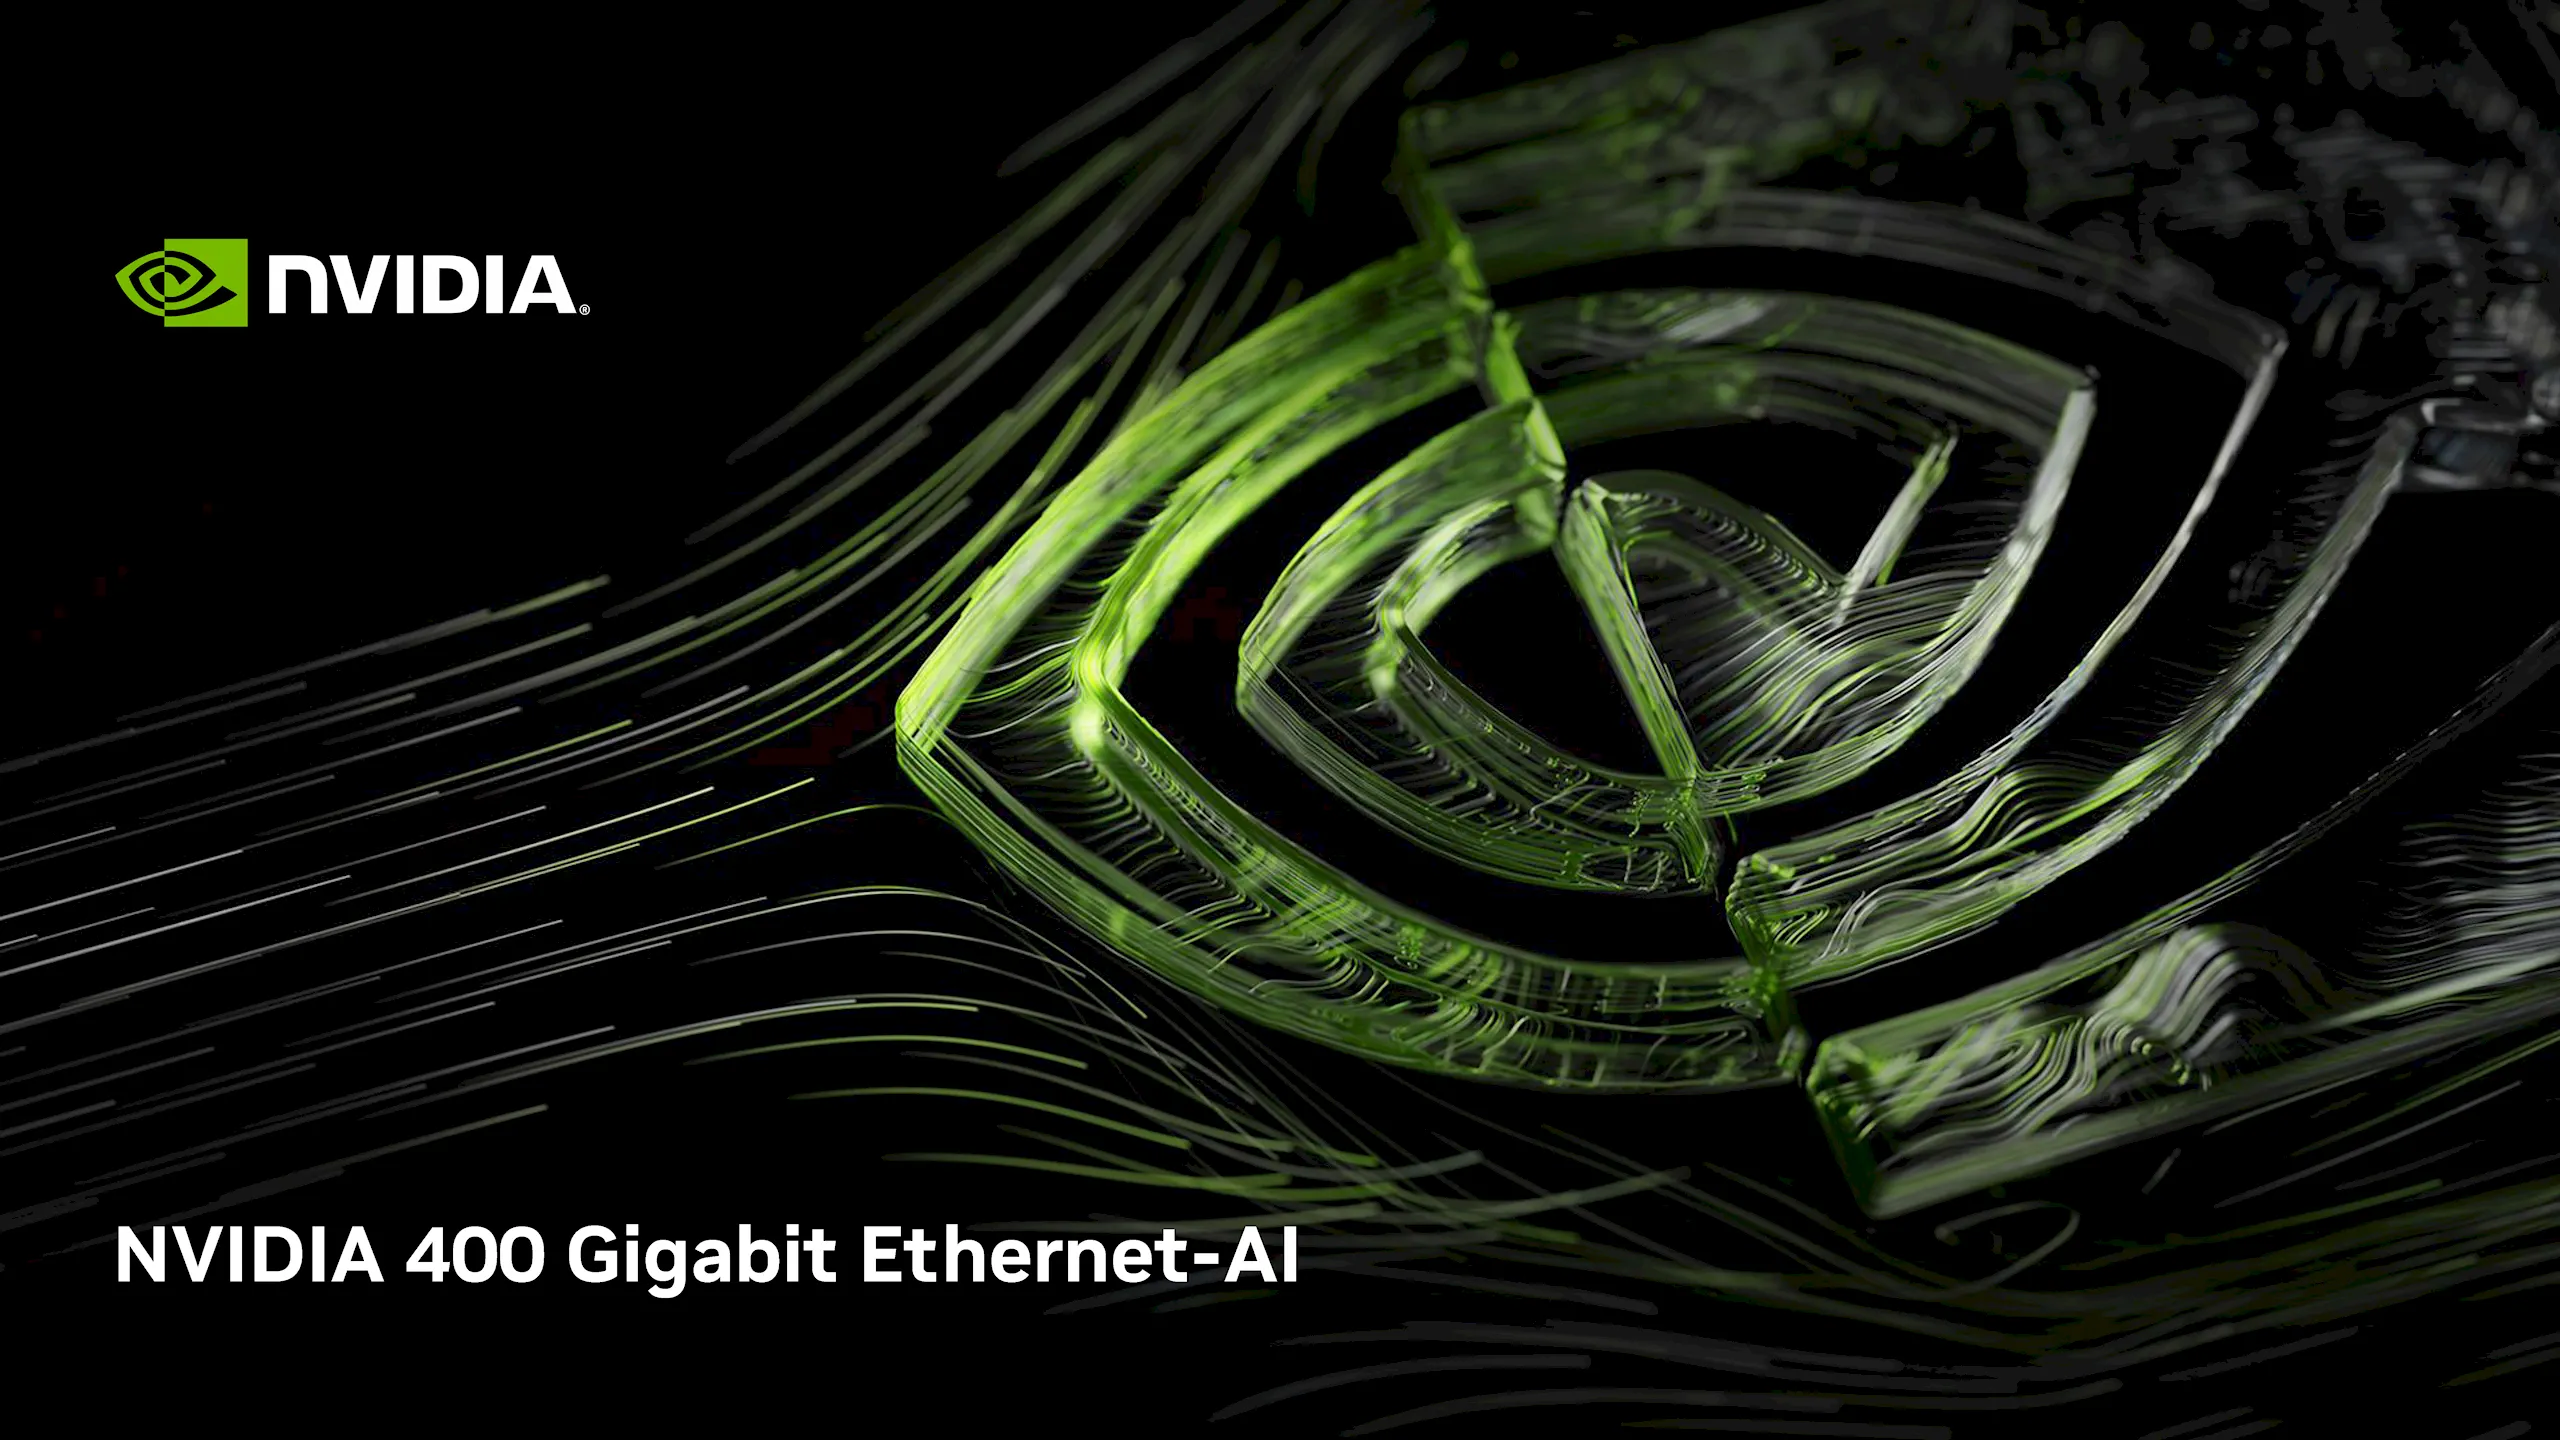 NVIDIA 400 Gigabit Ethernet-AI: Mở ra sức mạnh Networking và Trí tuệ Nhân tạo đáng kinh ngạc cho Trung tâm Dữ liệu